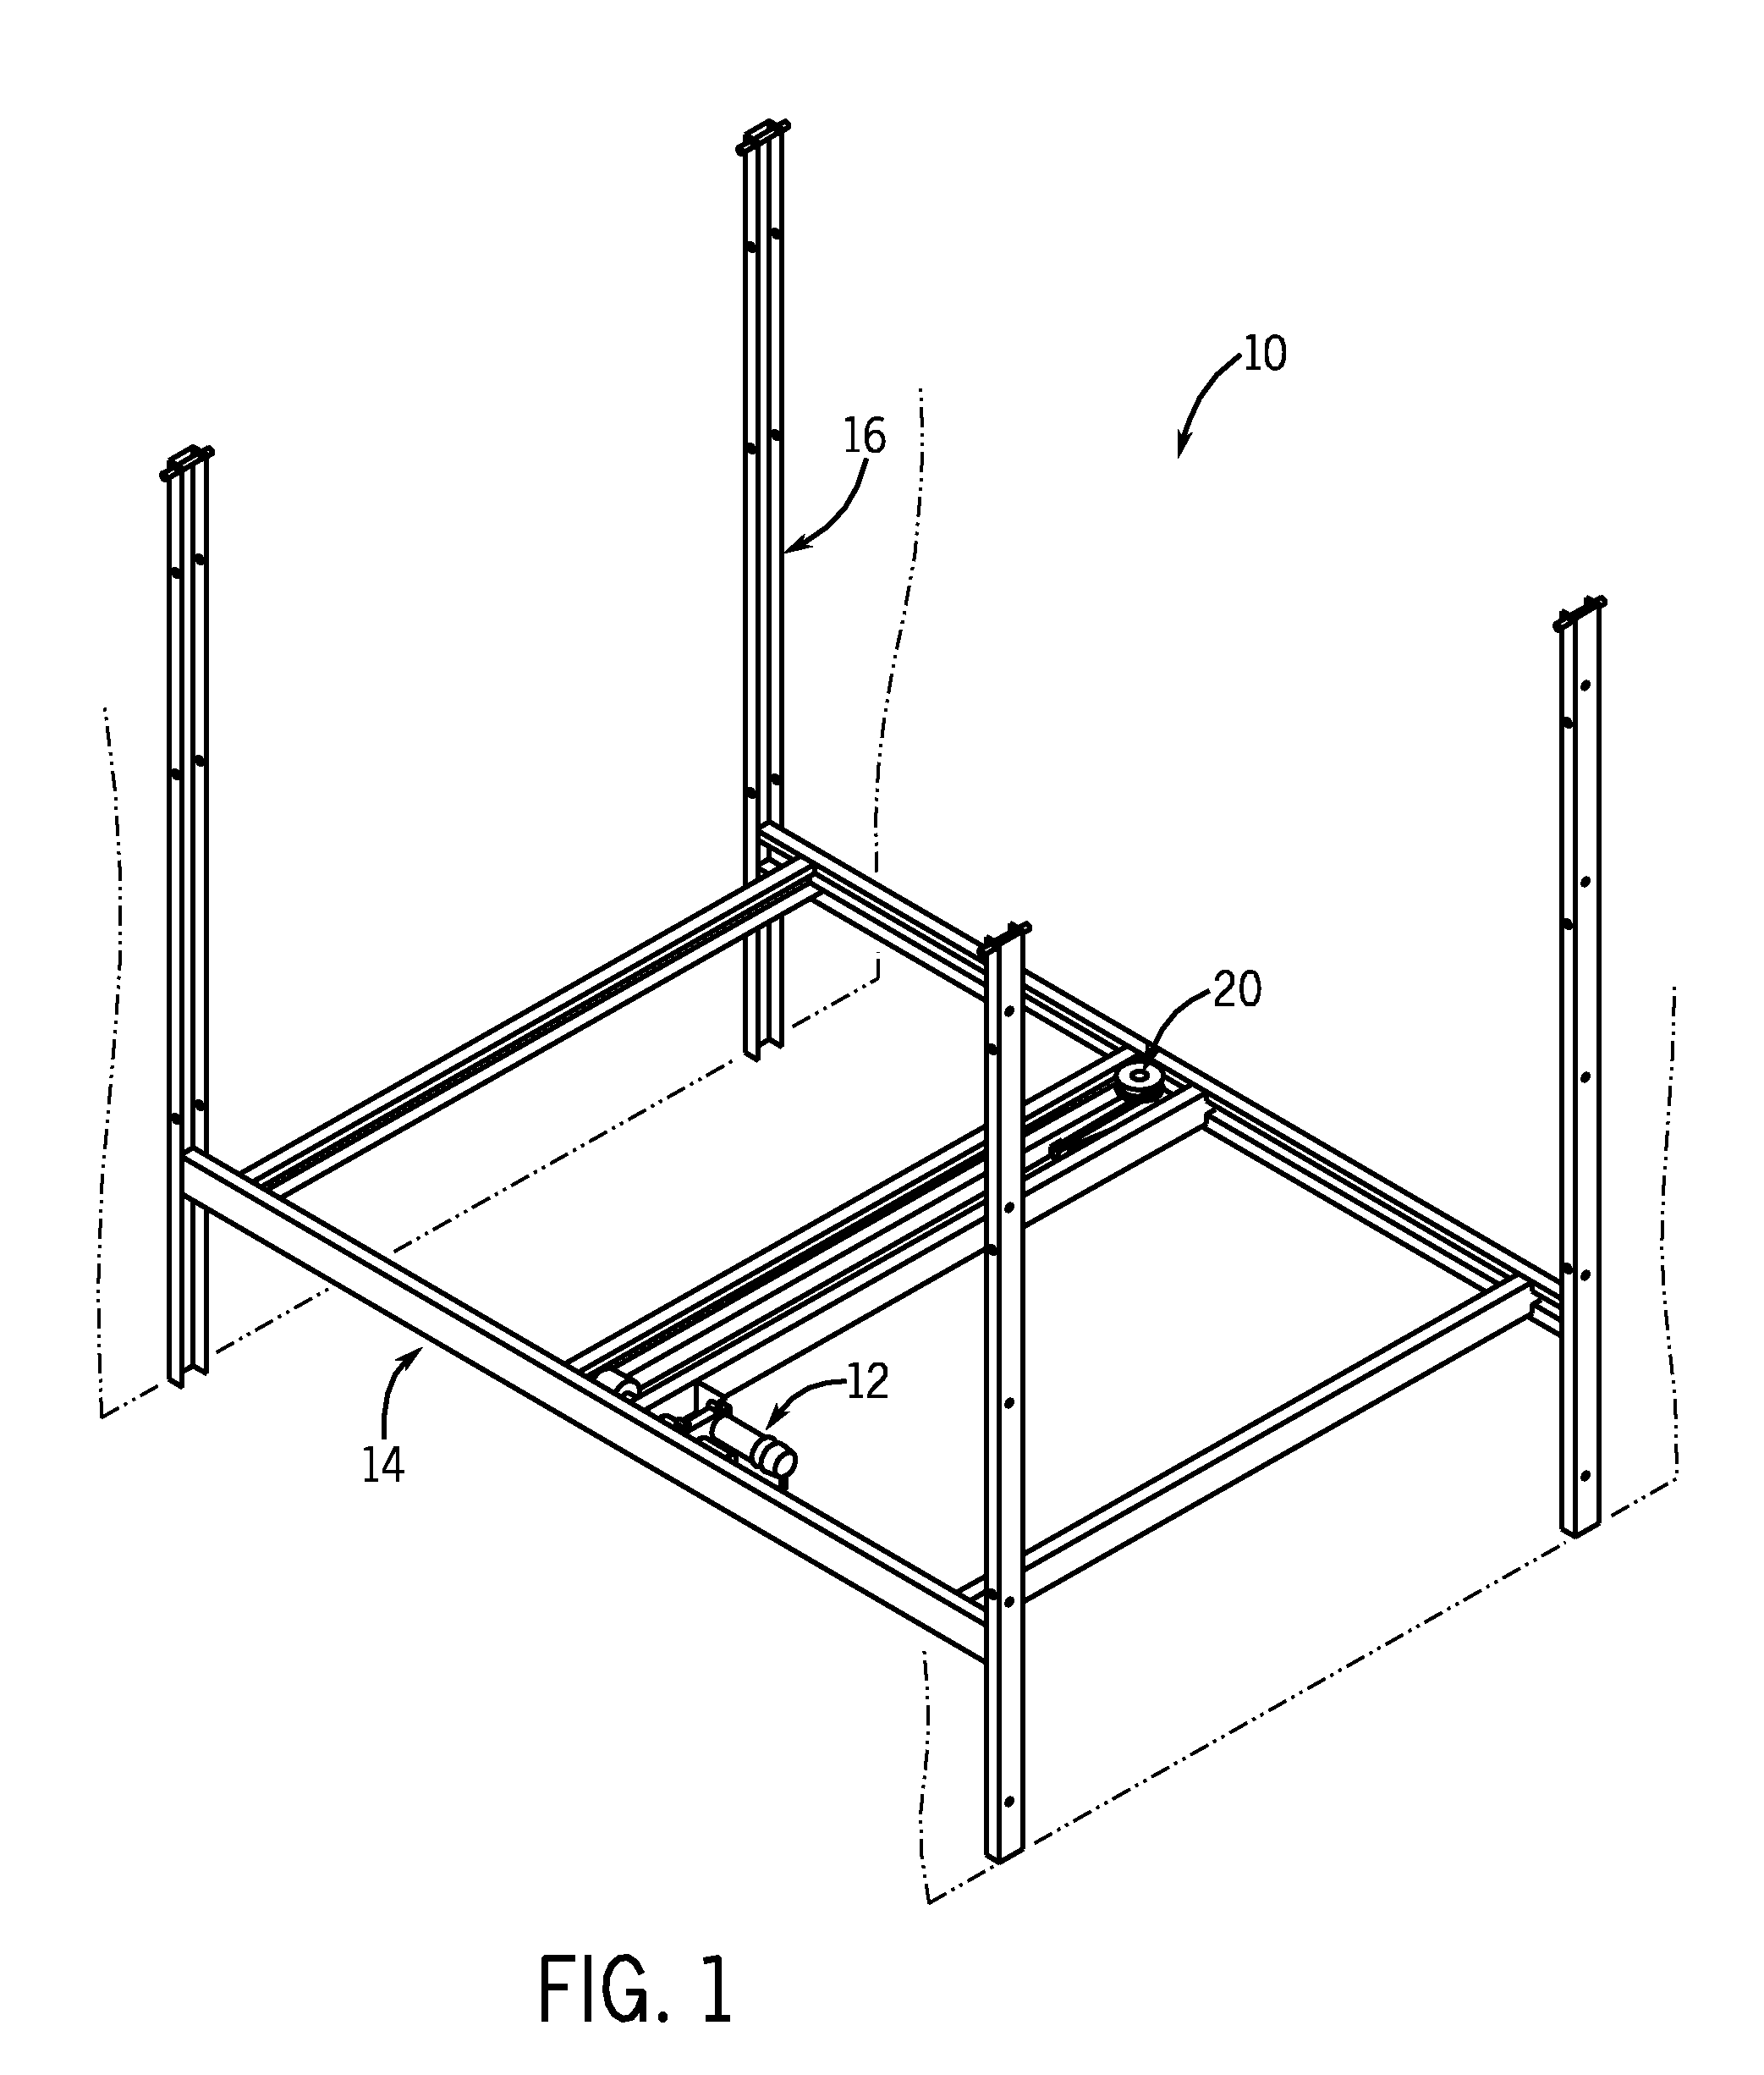 In-vehicle lift mechanism